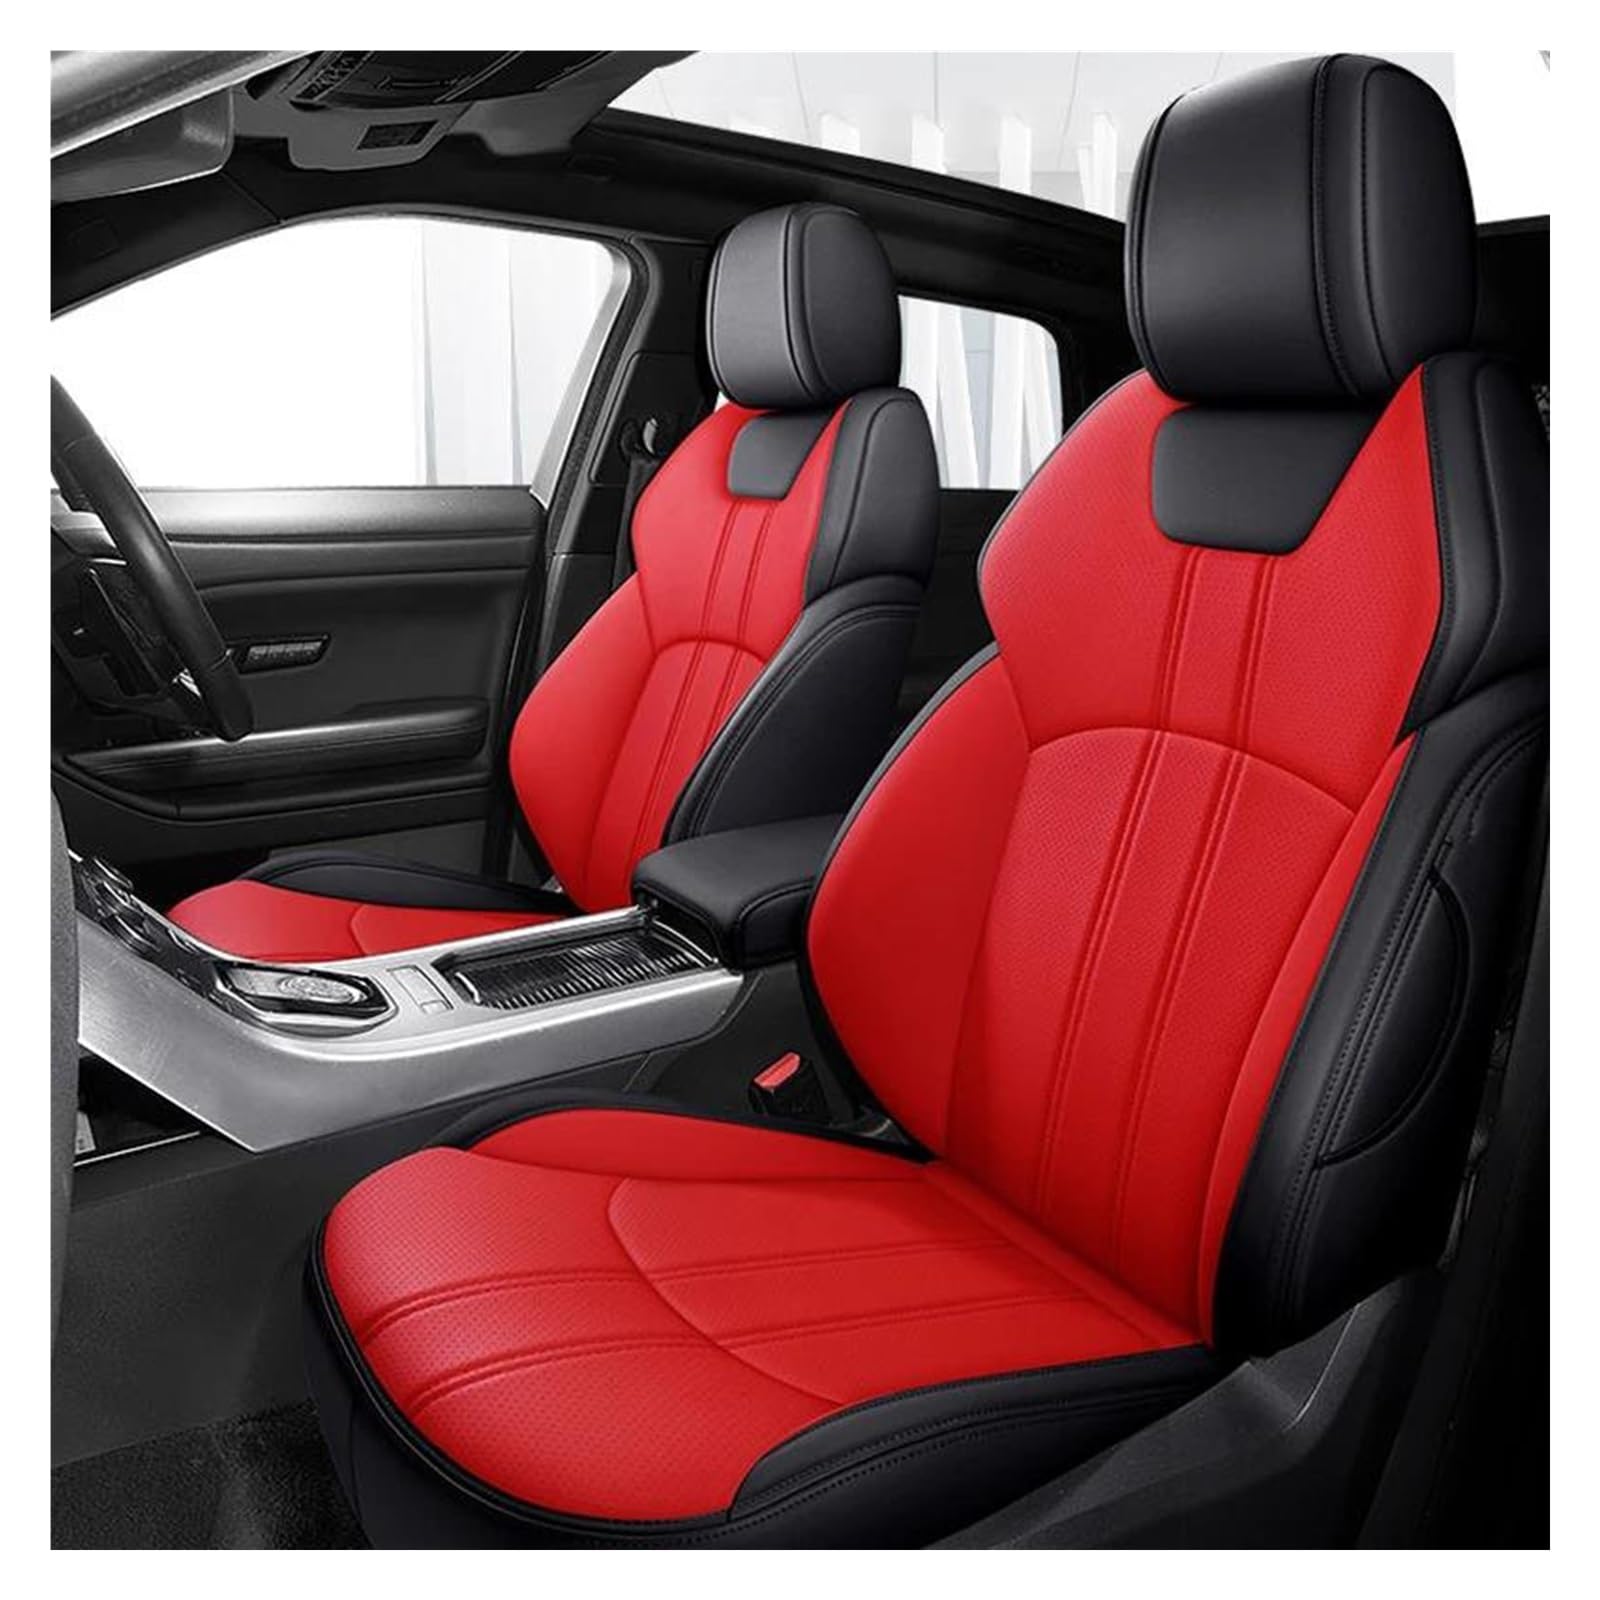 FOGJCMET Auto-Sitzbezüge Für Für X-Trail T32 2014 2015 2016 2017 2018 2019 2020 5 Sitz Custom Leder Auto Sitzbezug Autositzschoner(Black red,Standard Edition) von FOGJCMET